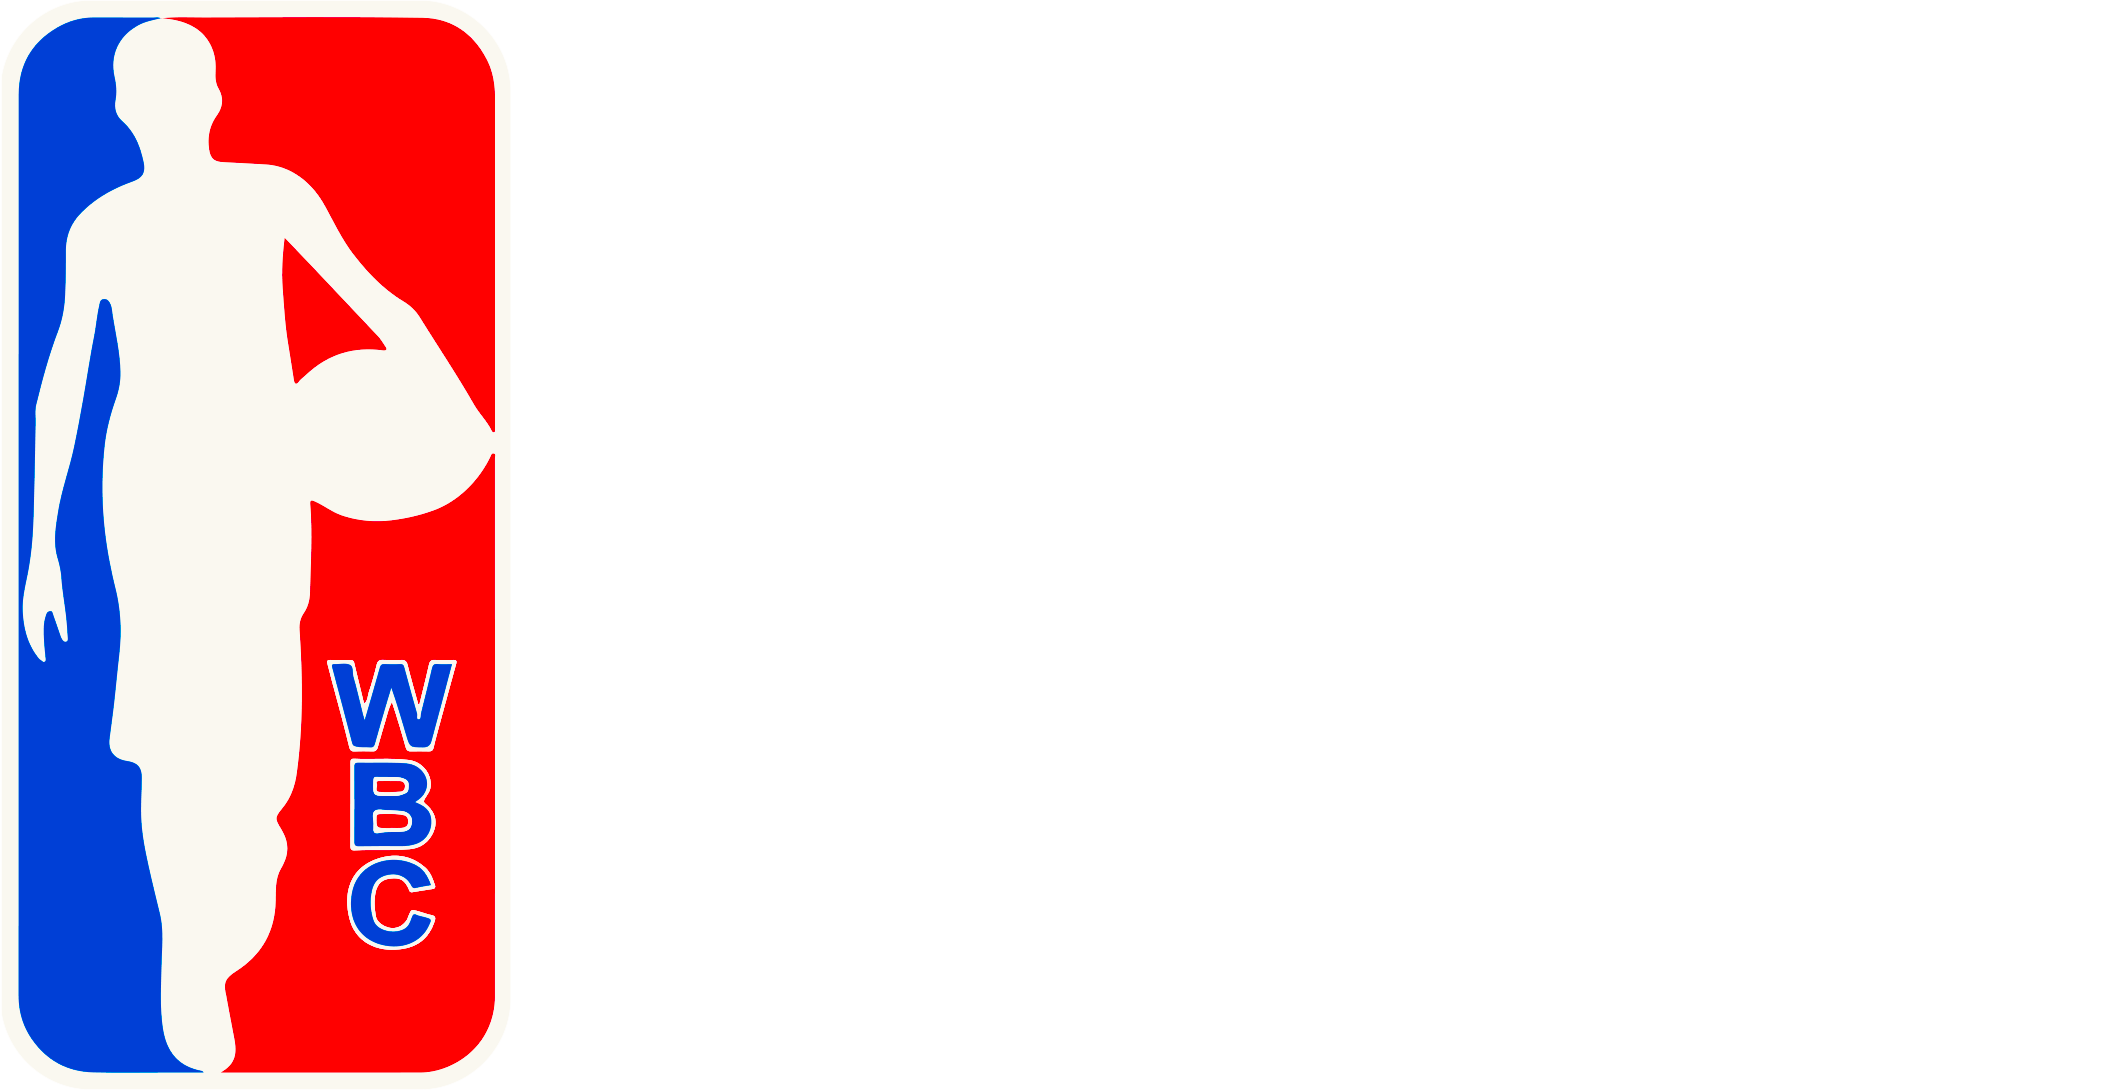 World Basket Camps - WBC